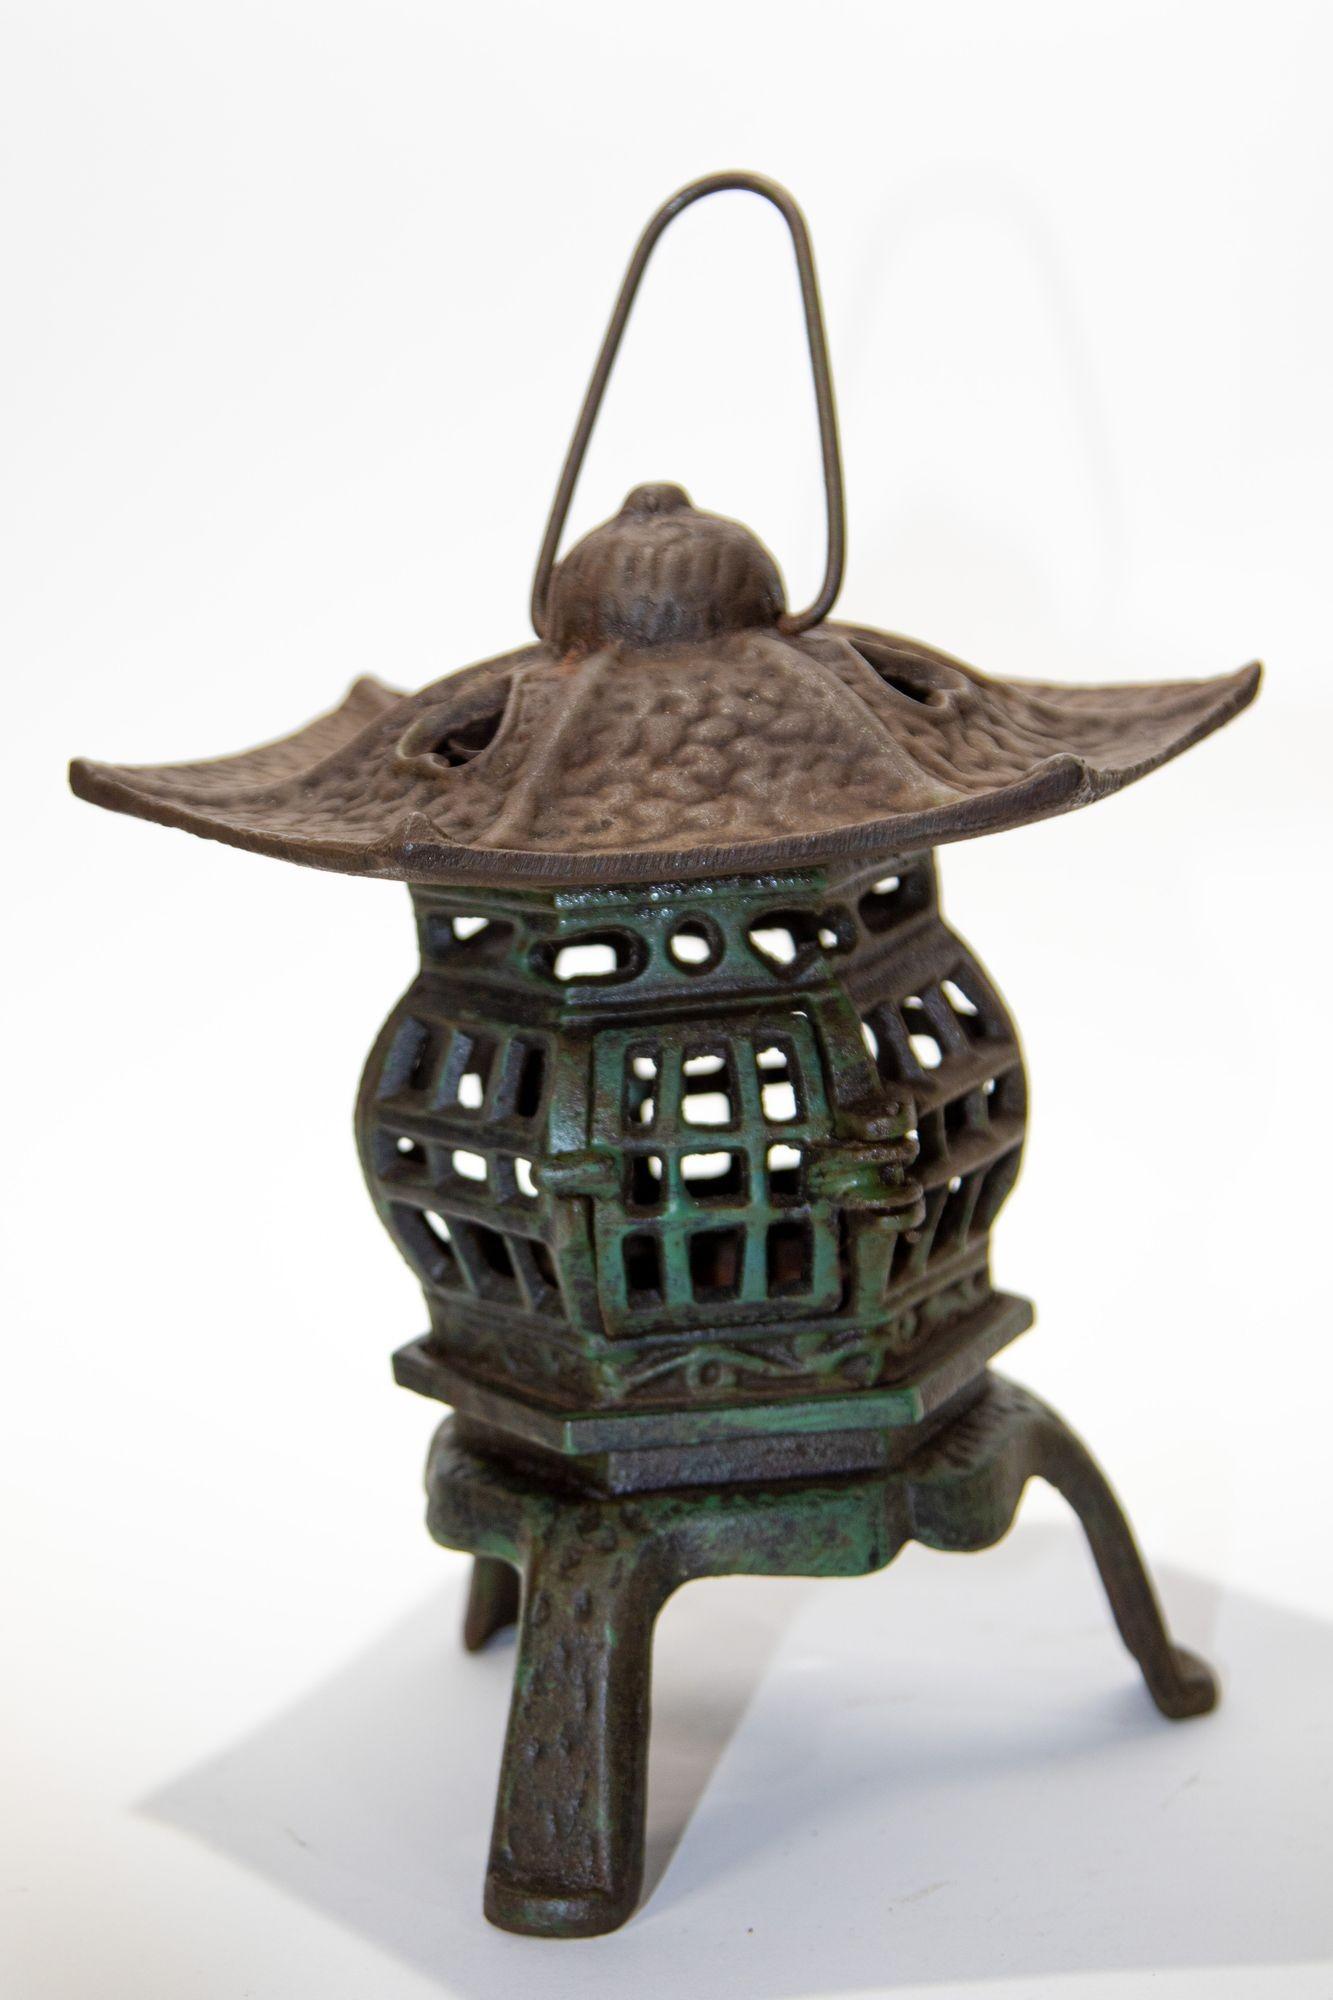 Lanterne de jardin pagode japonaise en fer avec bougie.
Lanterne à bougie japonaise en fer coulé à la main avec des cœurs sur le dessus.
Peut reposer sur une table ou être suspendu par une boucle
Mesures : Hauteur jusqu'au sommet de la boucle